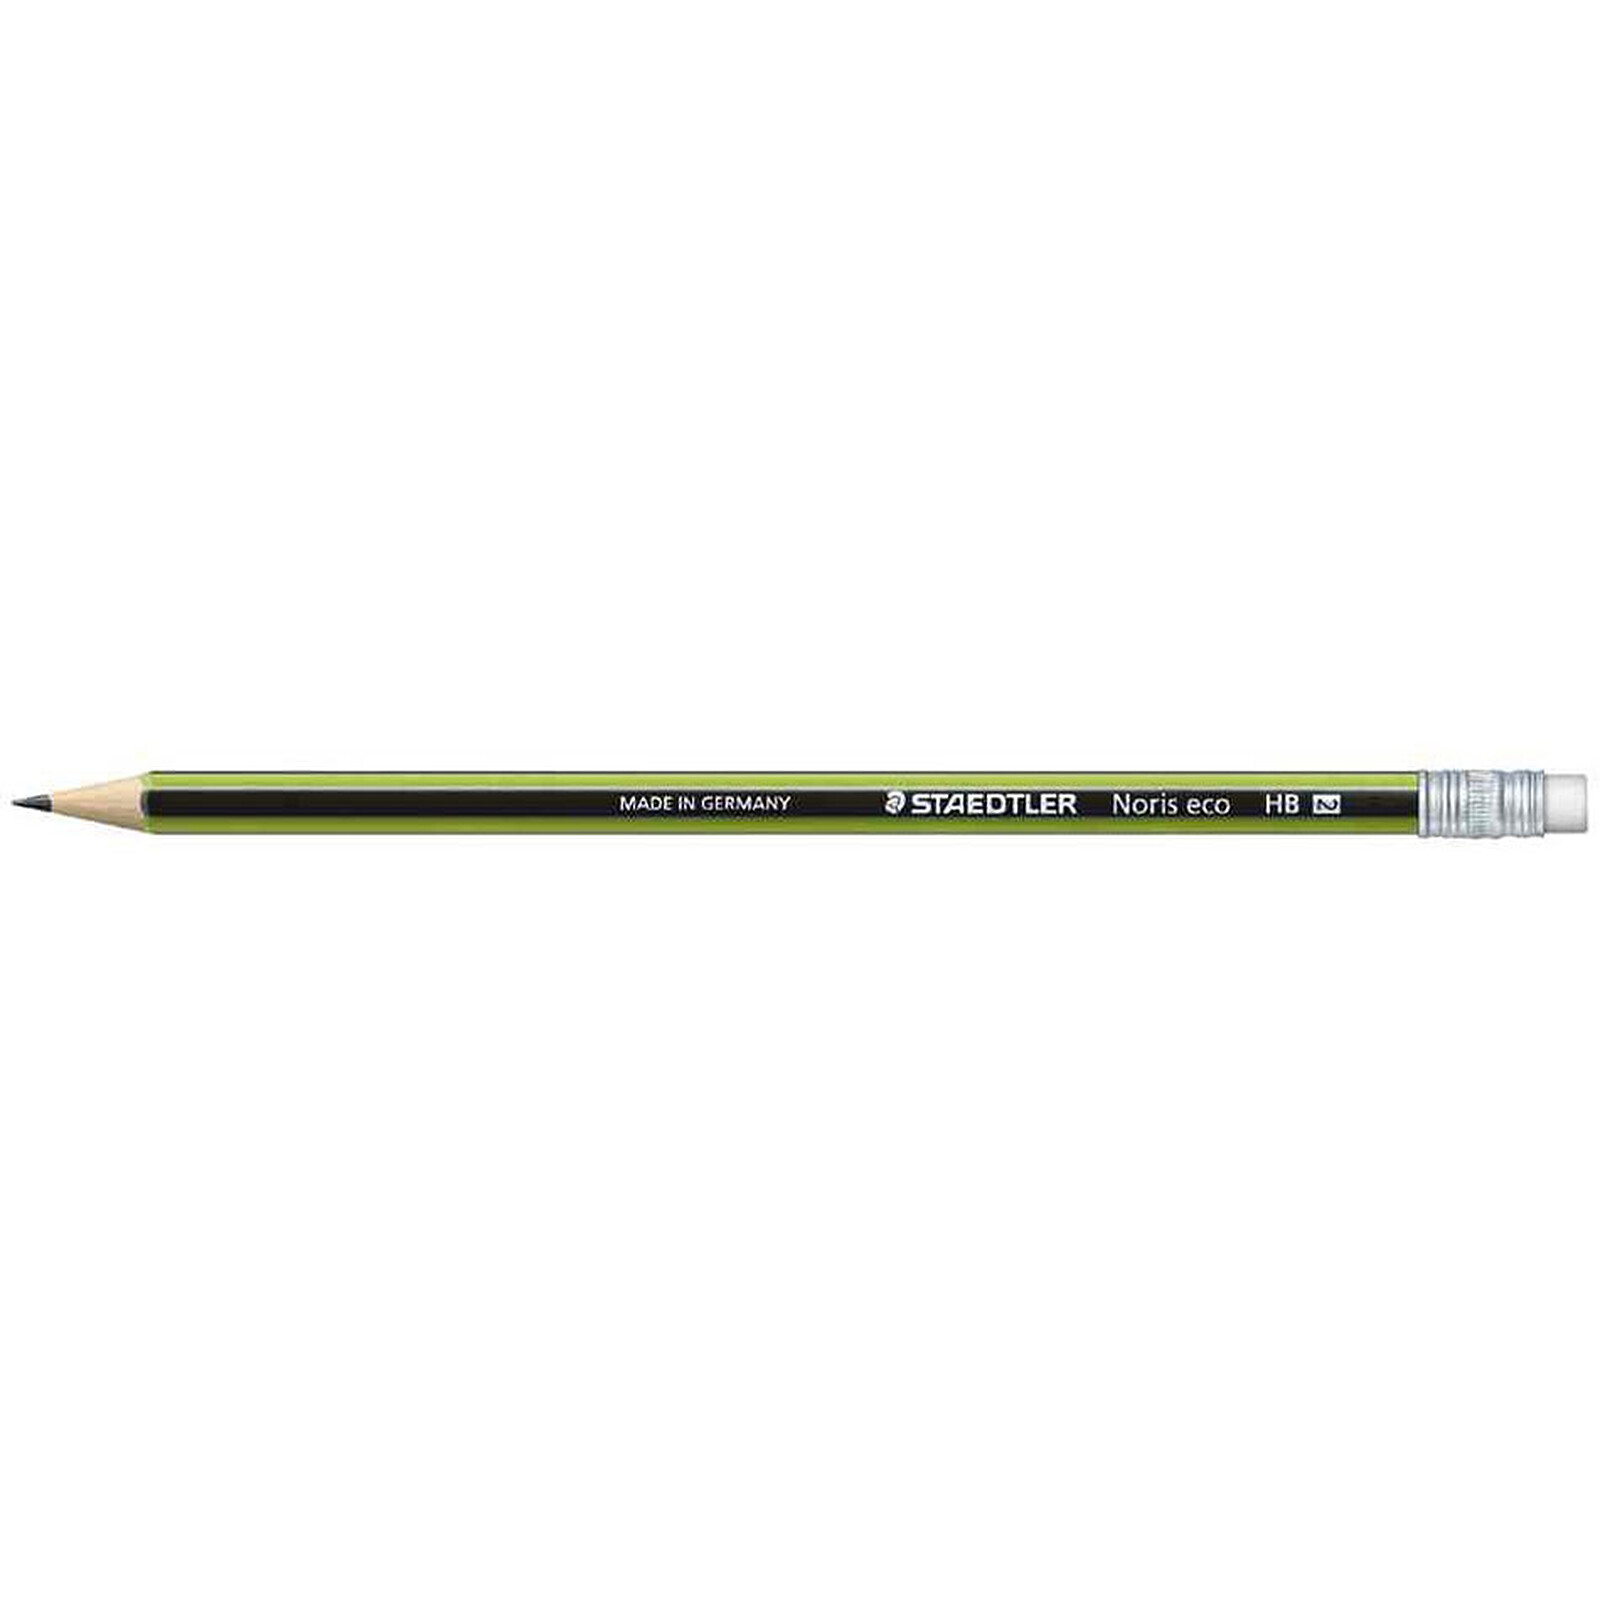 Étui blister avec 3 crayons HB Crayons à papier à embout gomme de très haute qualité Fabriqués en bio-matériau innovant 18230HBBK3 Staedtler Noris Eco 